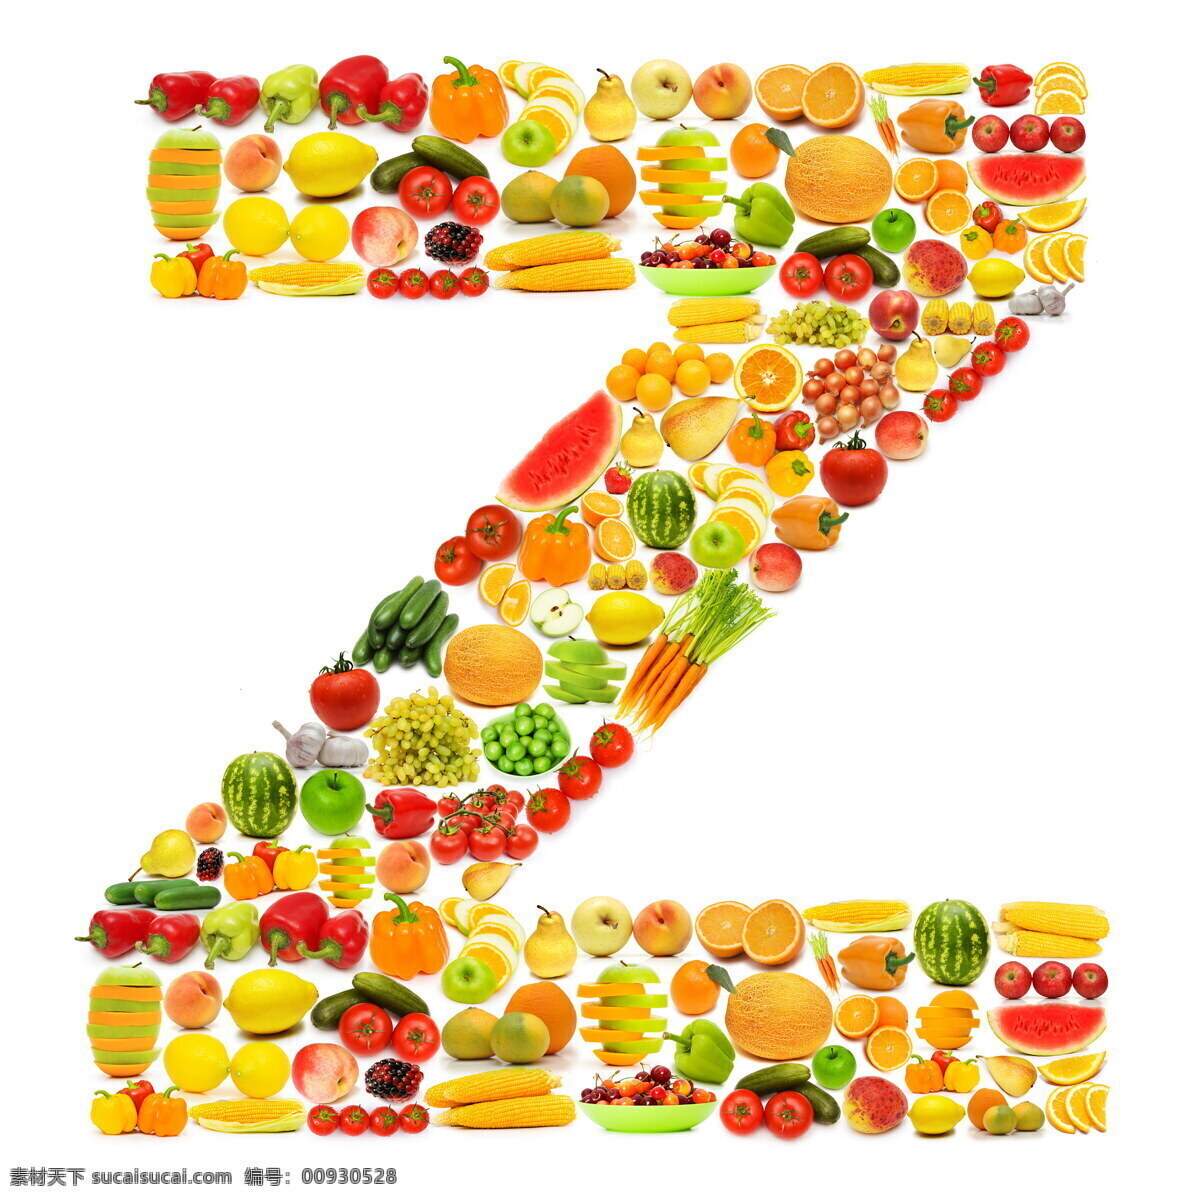 蔬菜水果 组成 字母 z 字母z 辣椒 柠檬 苹果 黄瓜 橙子 香蕉 蔬菜 水果 食物 水果蔬菜 餐饮美食 水果图片